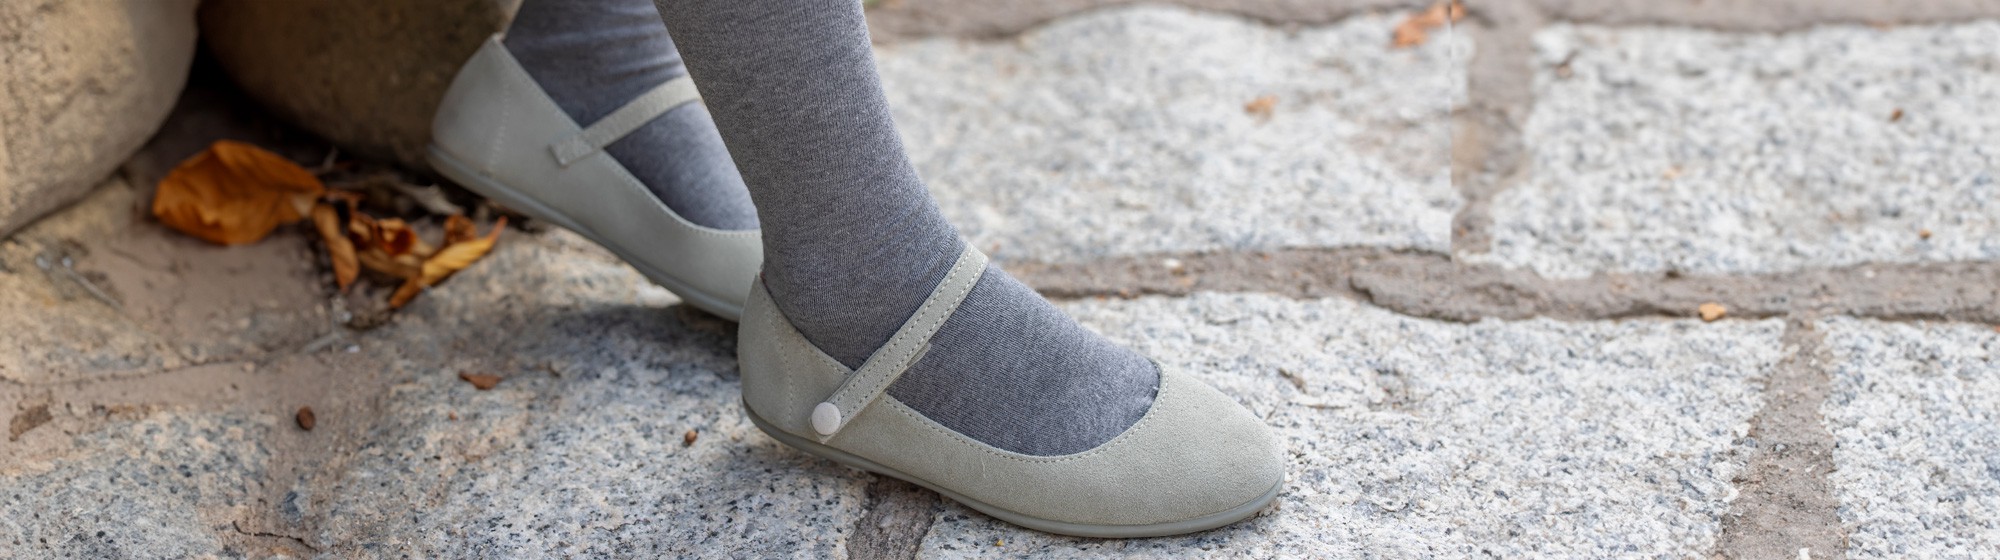 Niños - Zapatos Niña Escolar Infantil – Andrea US